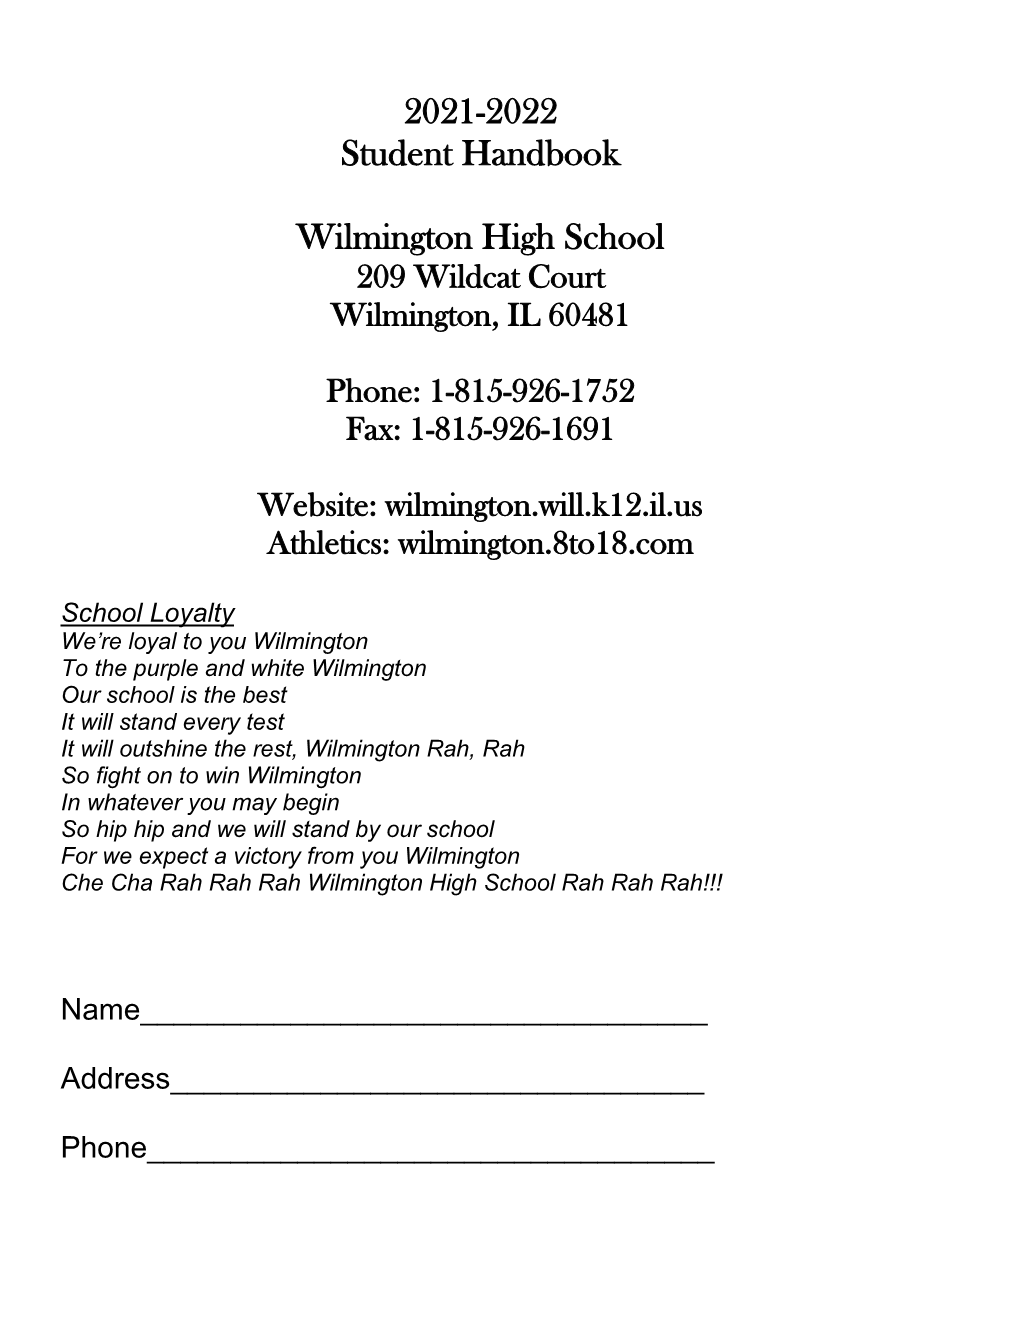 2021-2022 Student Handbook Wilmington High School